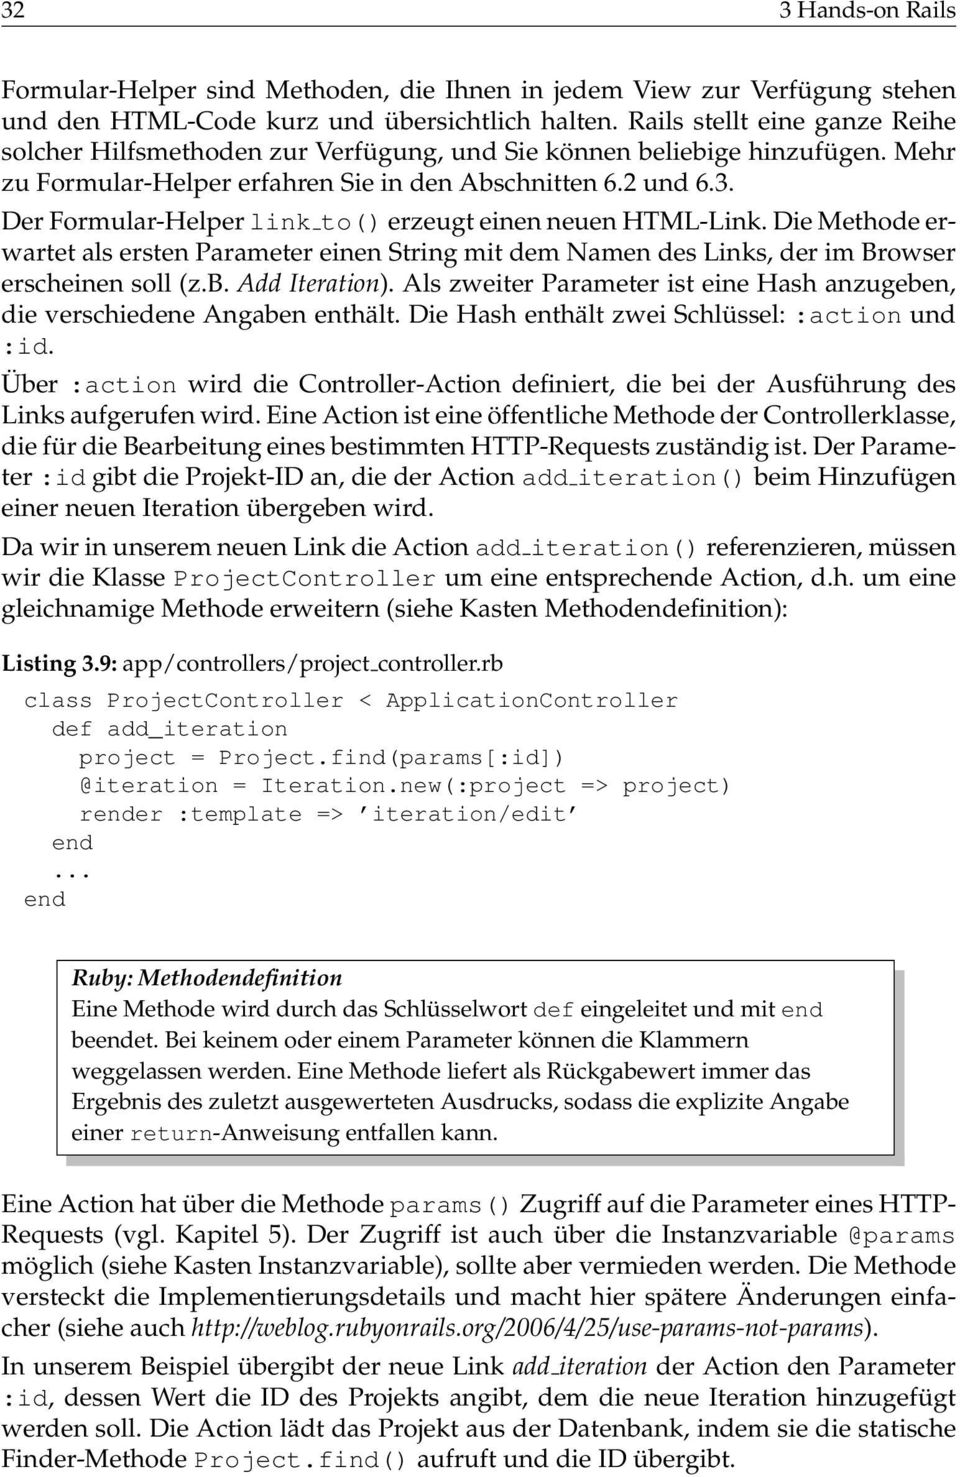 Der Formular-Helper link to() erzeugt einen neuen HTML-Link. Die Methode erwartet als ersten Parameter einen String mit dem Namen des Links, der im Browser erscheinen soll (z.b. Add Iteration).